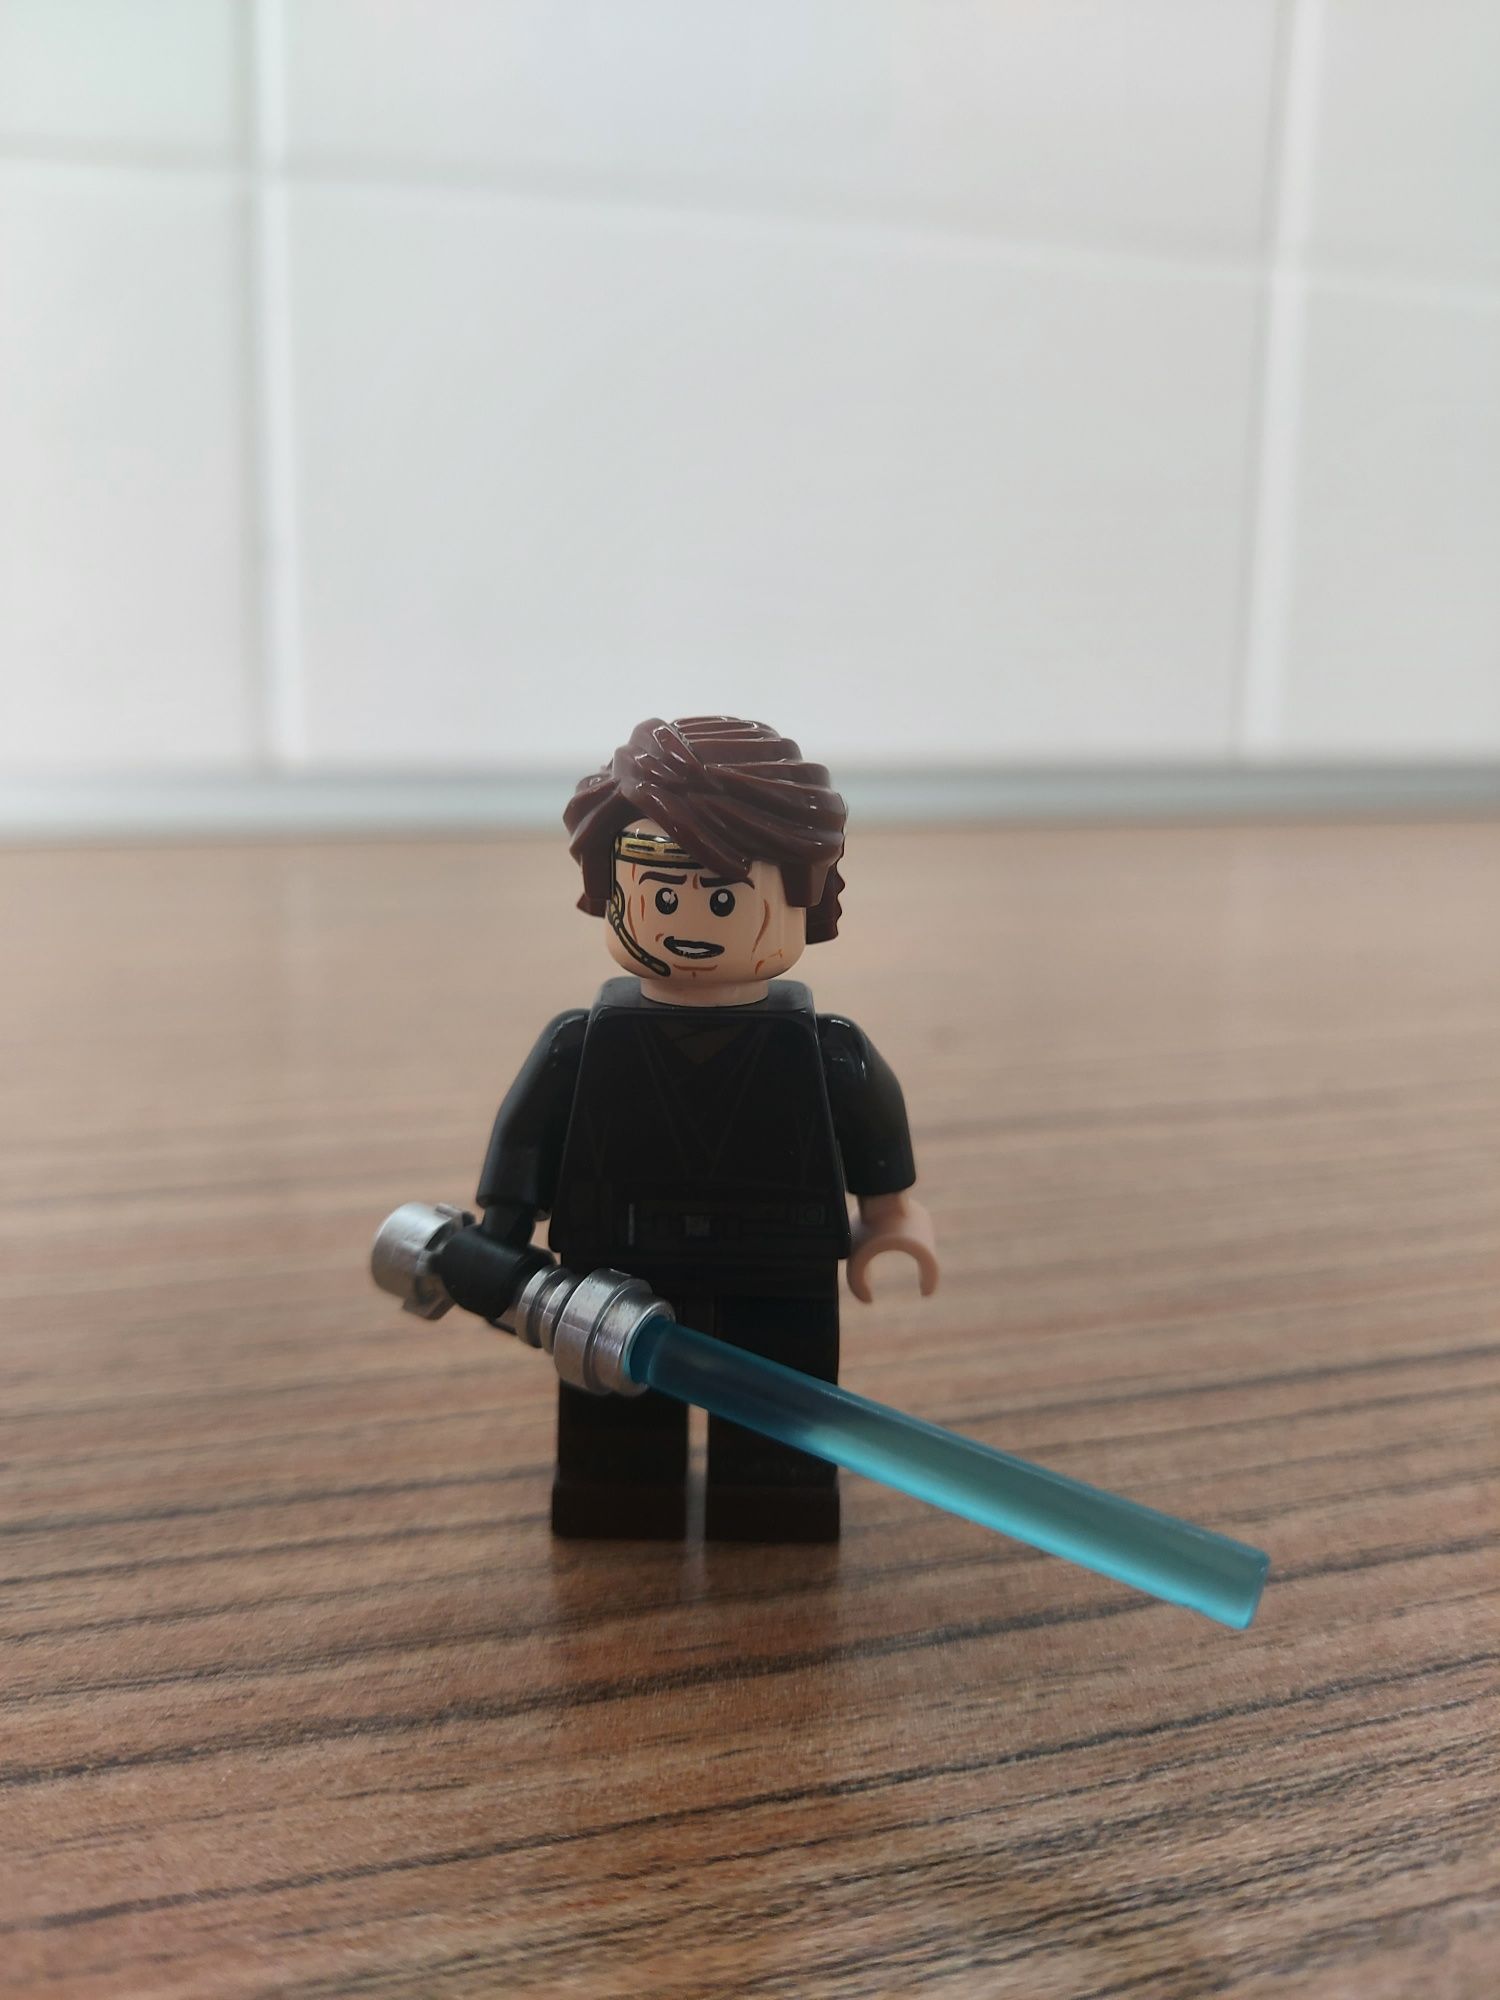 Lego Star Wars 75038